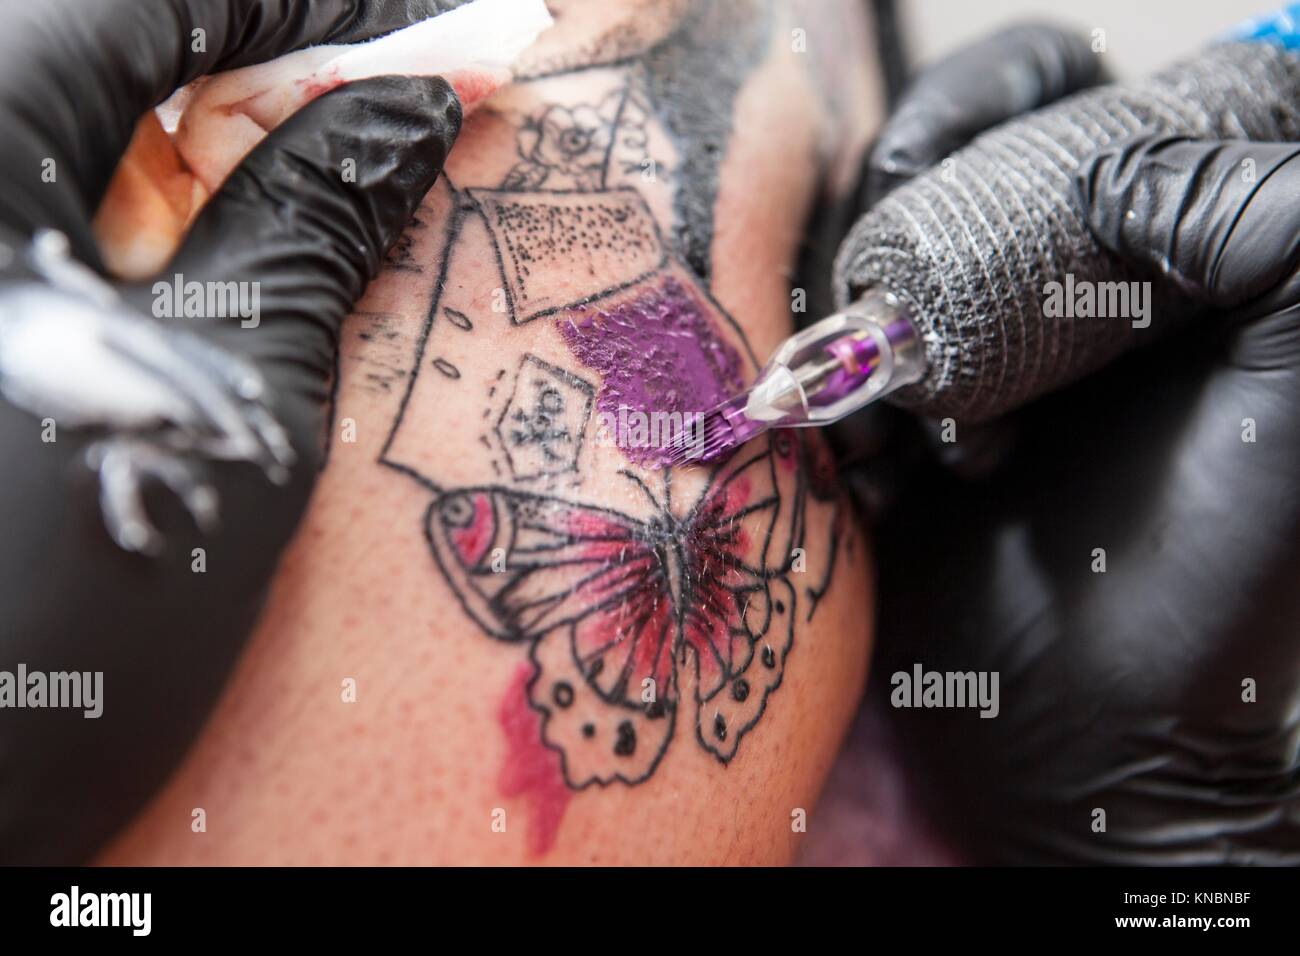 Artiste de tatouage tatouage s'applique sur le bras. Elle est de couleur pourpre avec remplissage du tatouage. Banque D'Images